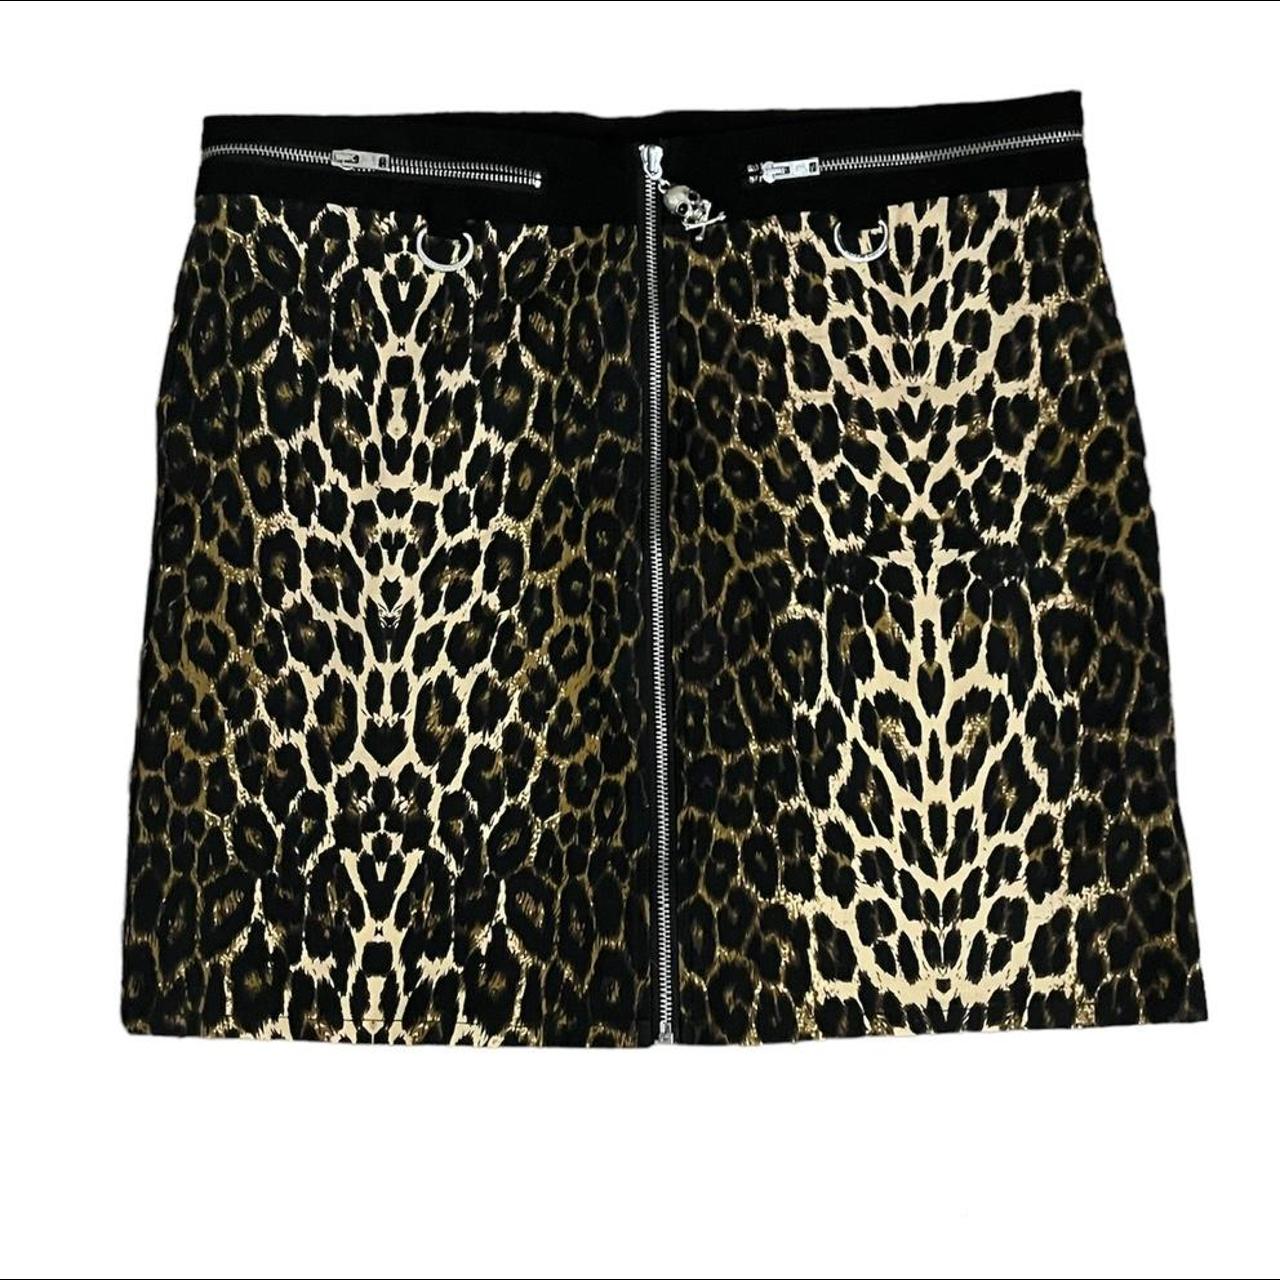 Killstar leopard/cheetah semi mini skirt Has cool... - Depop